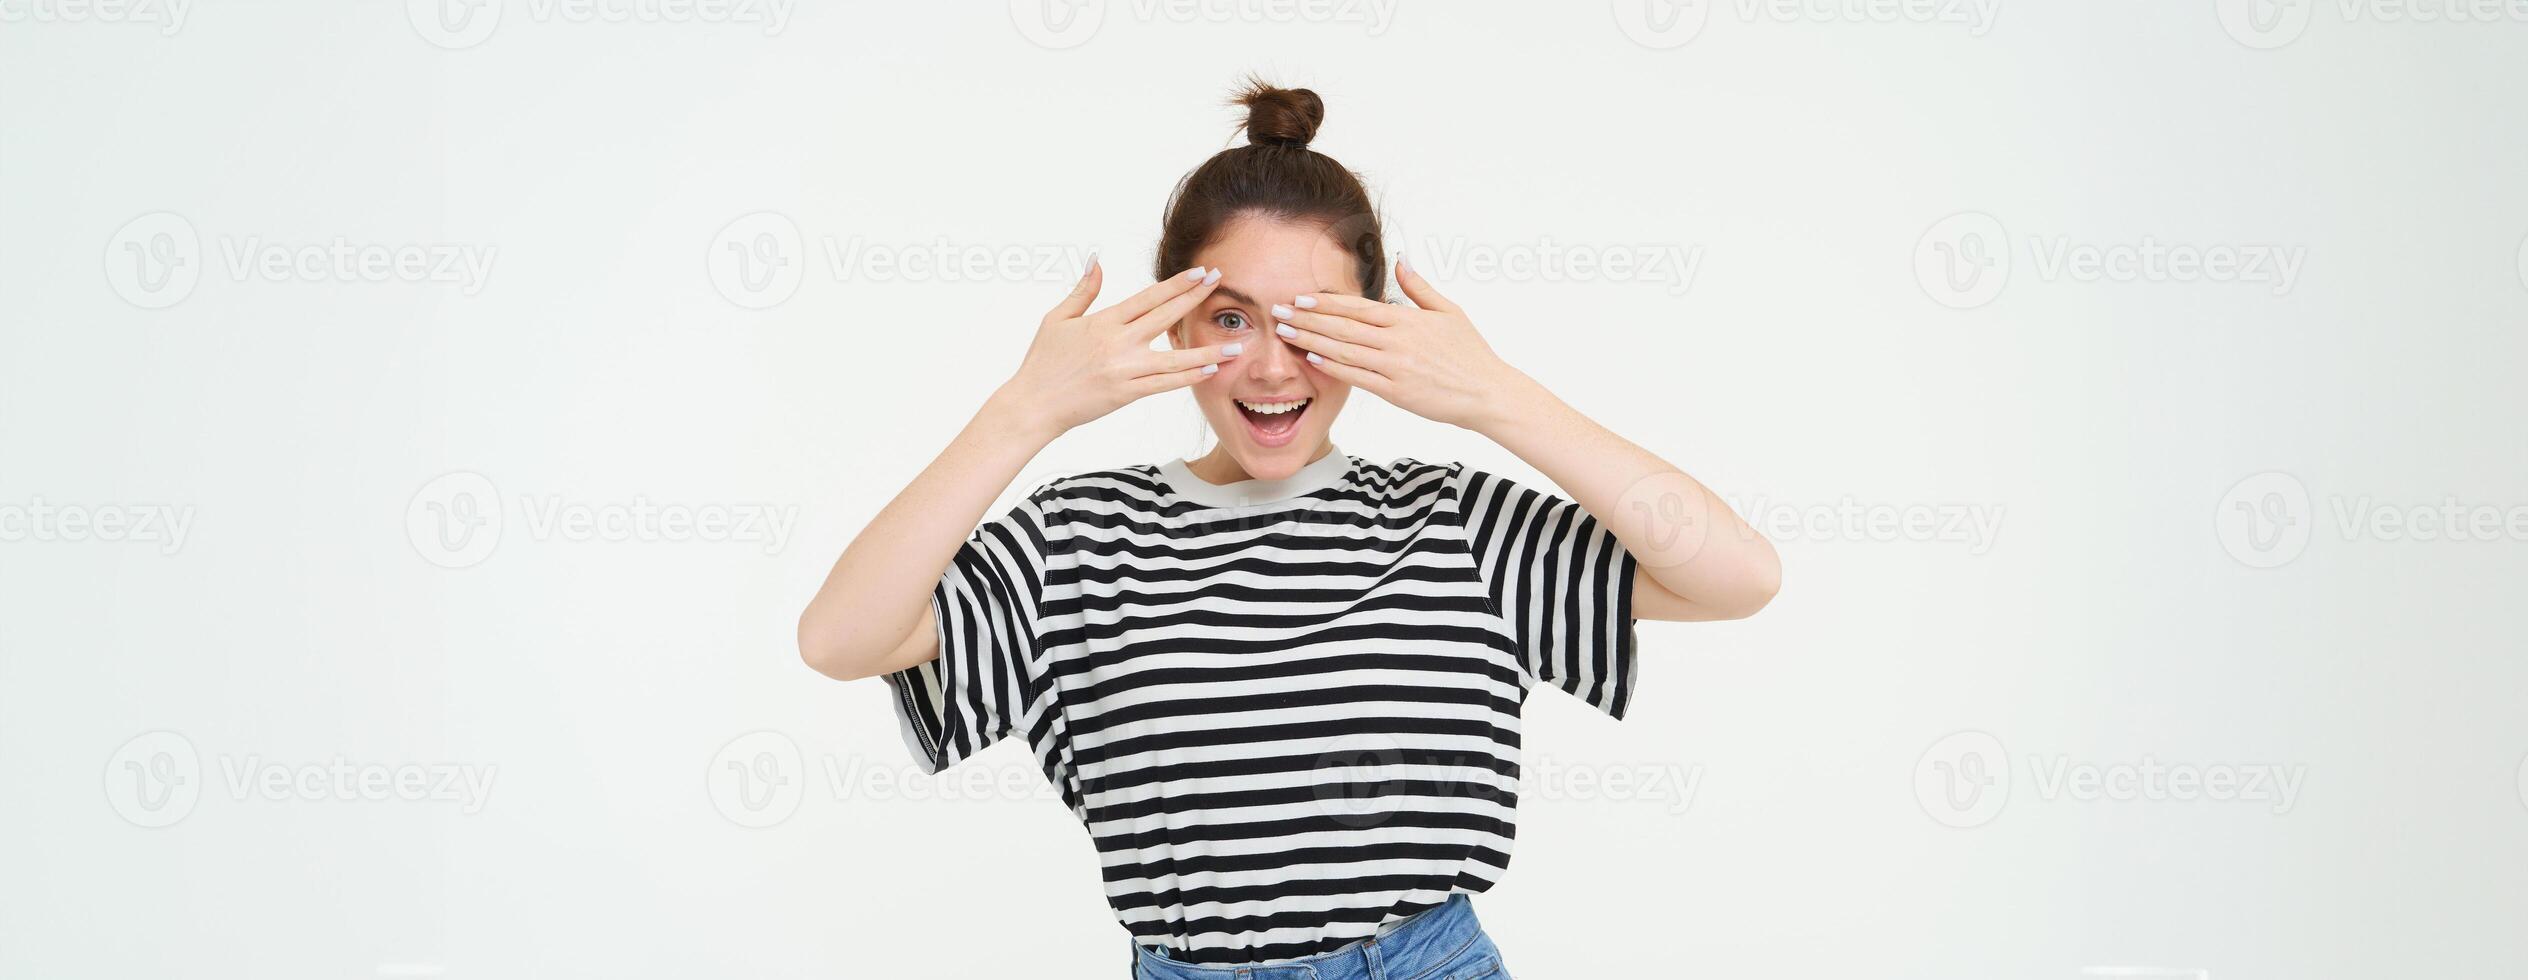 Lycklig ung kvinna, födelsedag flicka kikar genom fingrar, innehar händer på ögon, väntar för överraskning, står över vit bakgrund foto